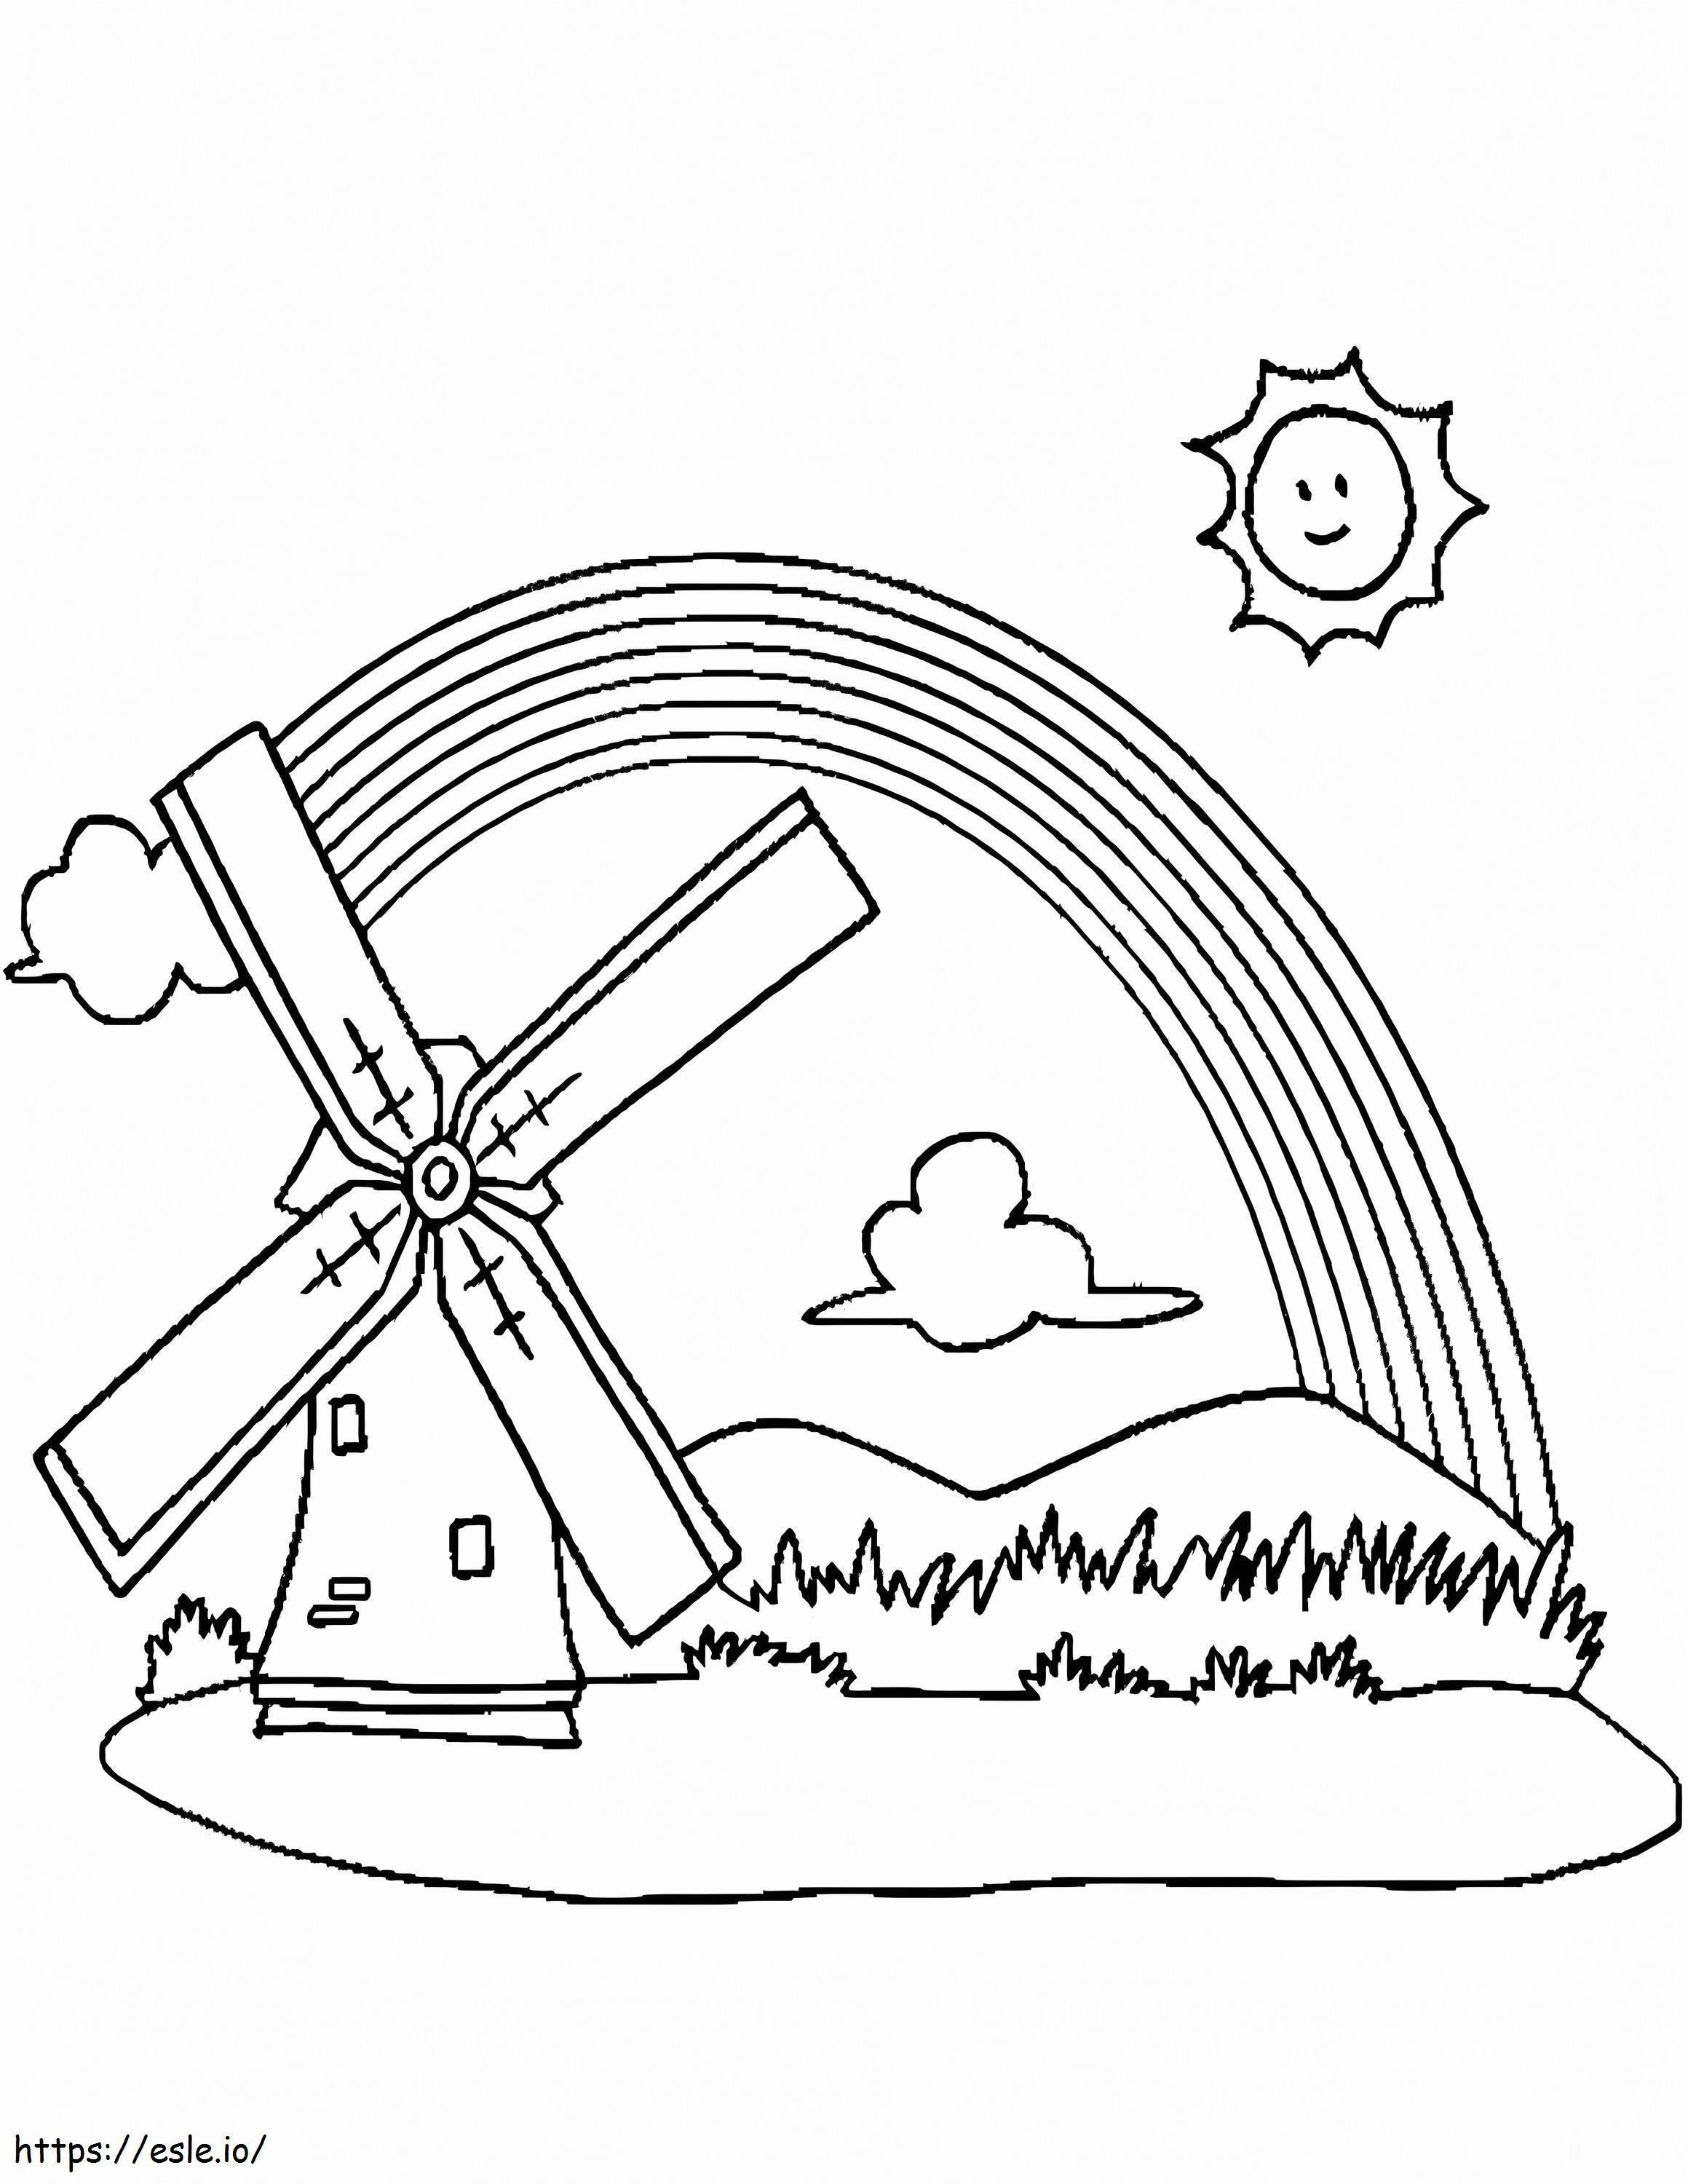 Windmühle und Regenbogen ausmalbilder